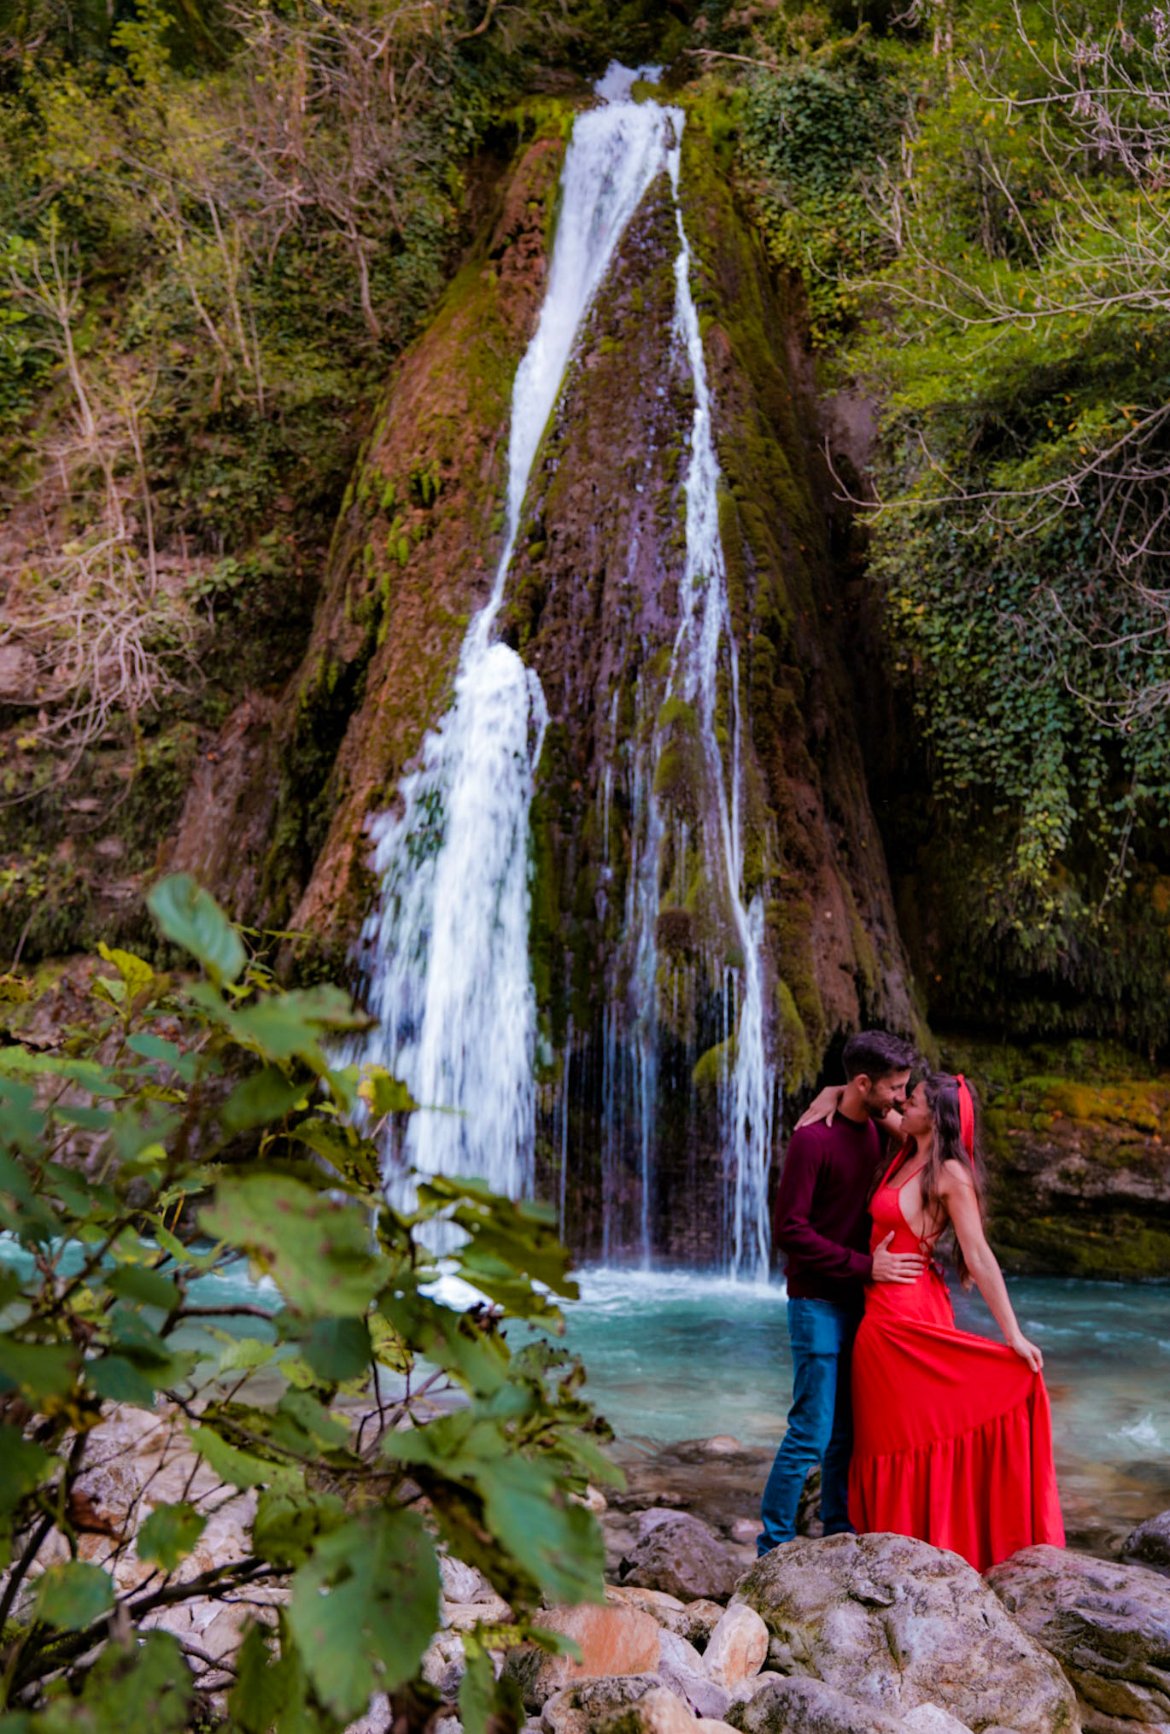 Martvili Canyon waterfall in Georgia